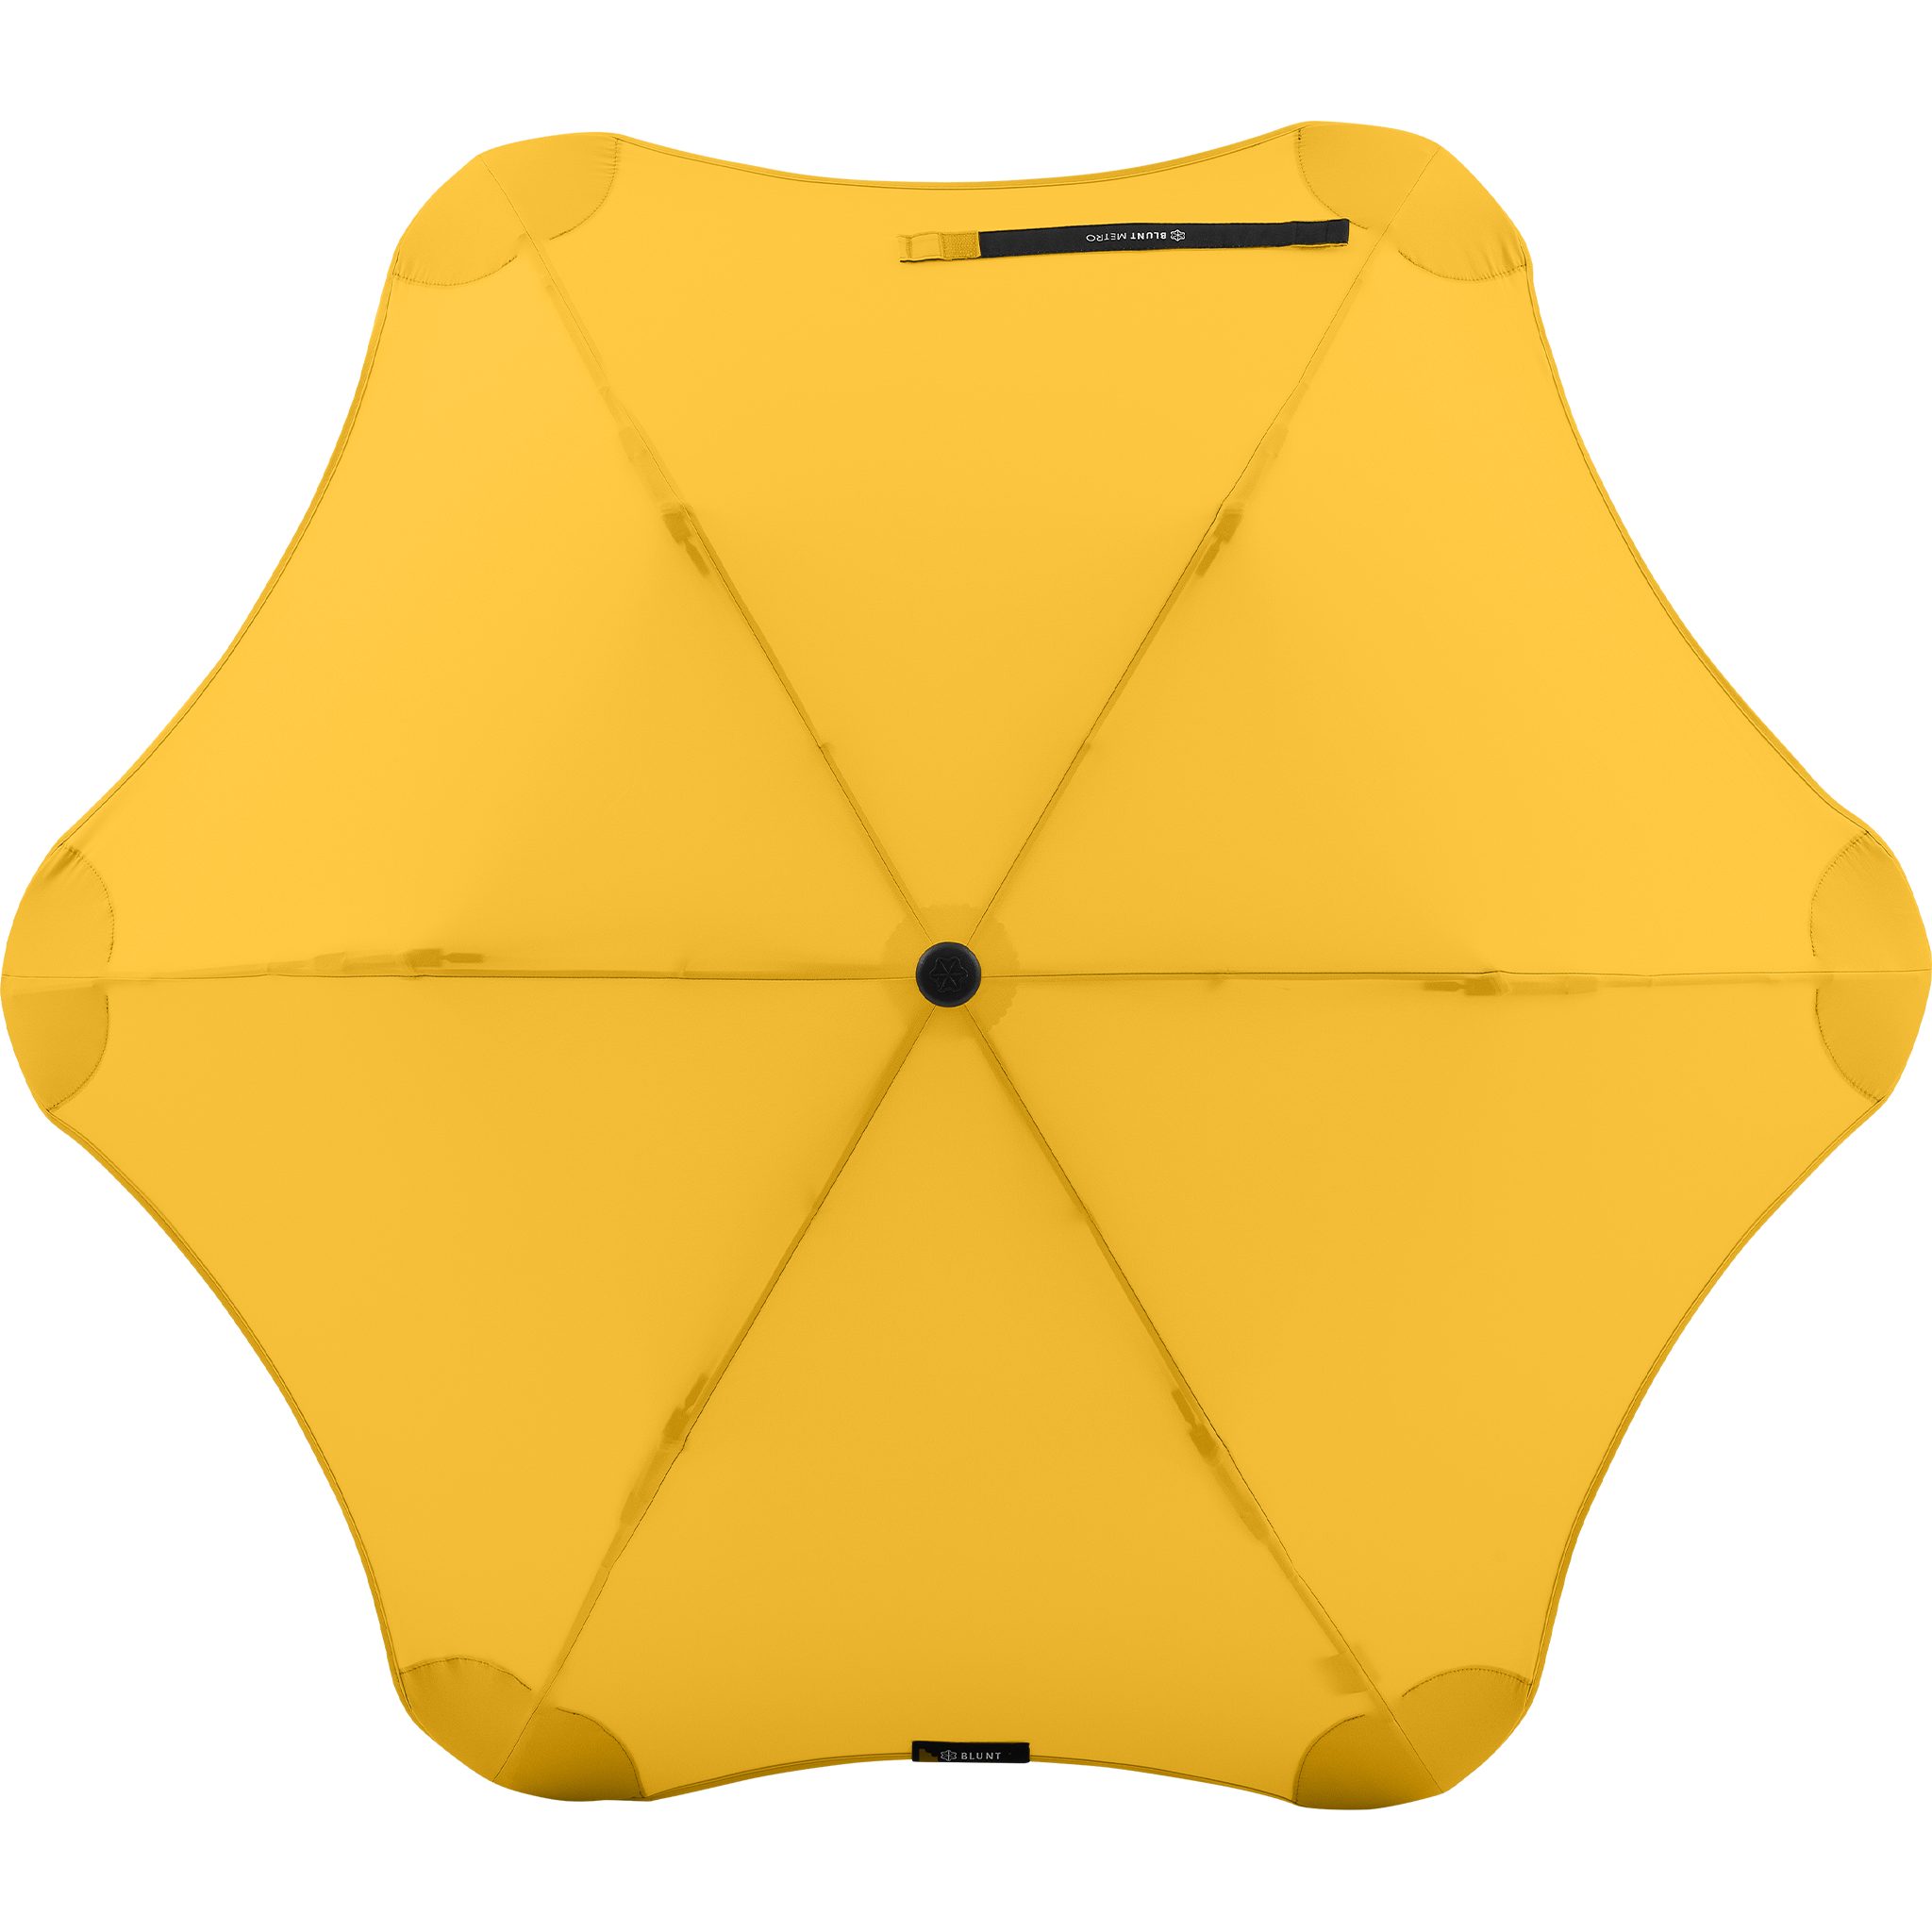 Metro, Technologie, Taschenregenschirm einzigartige patentierte herausragende Blunt gelb Silhouette